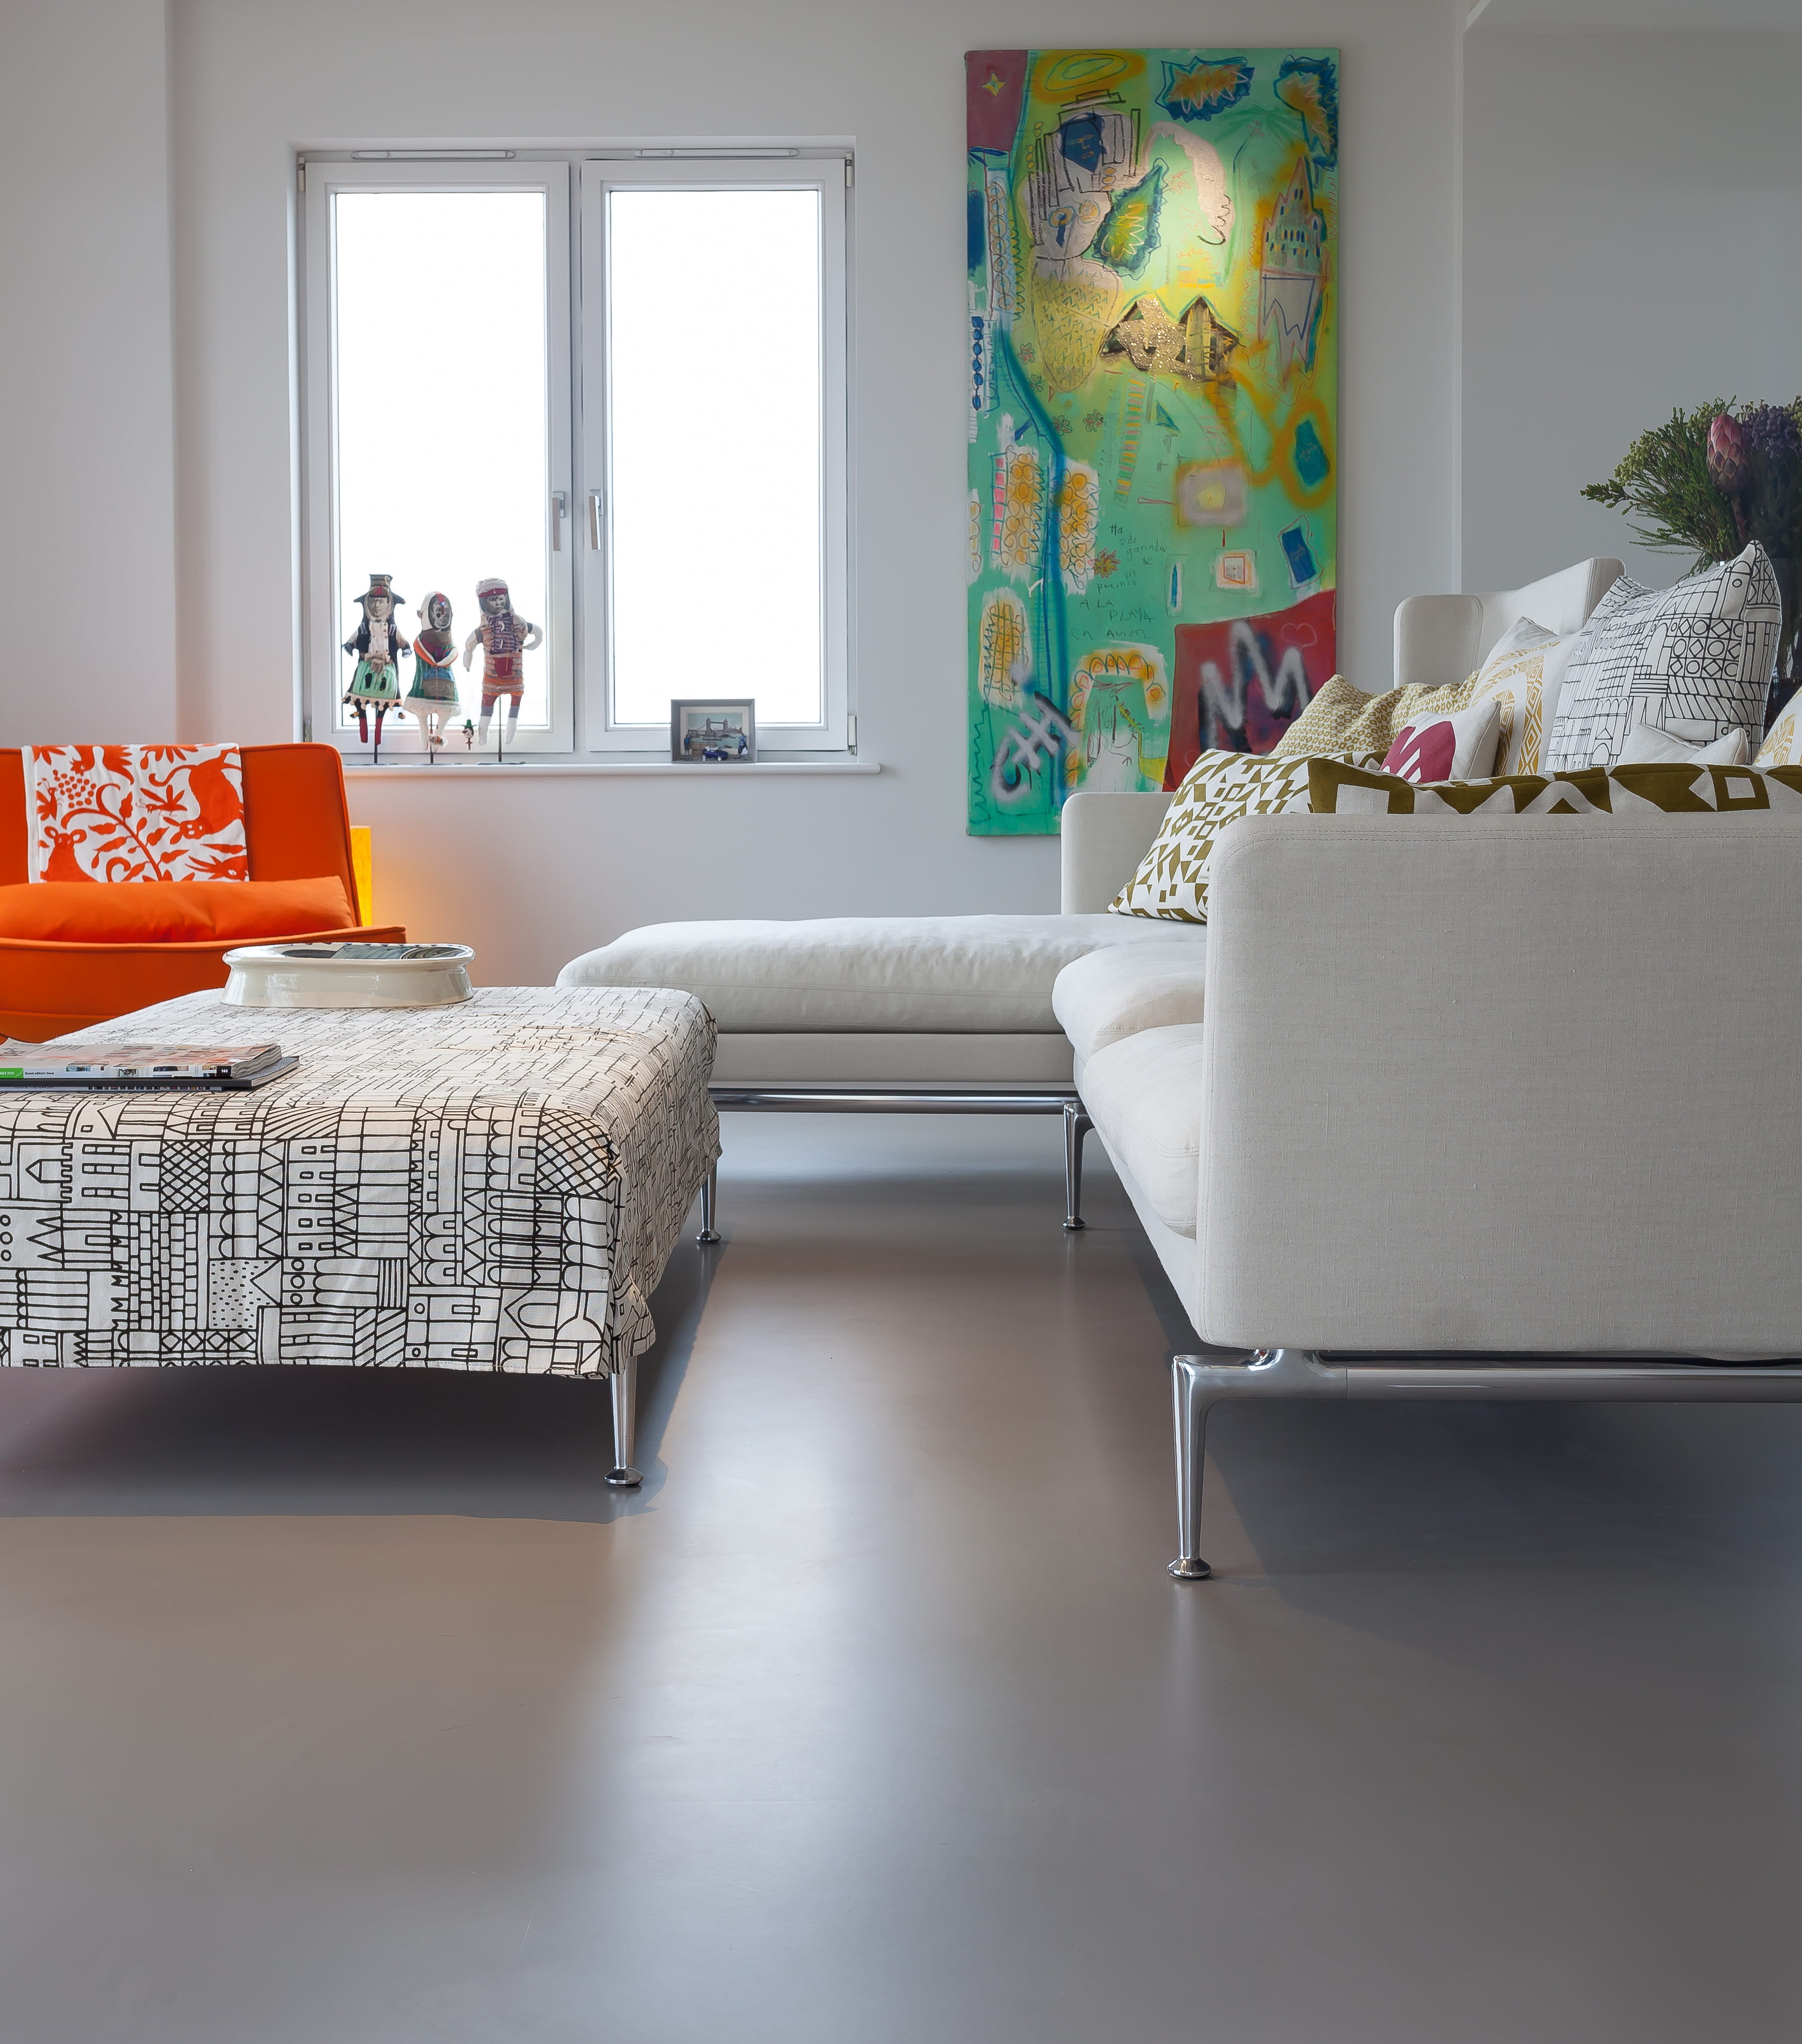 Neutral resin floors